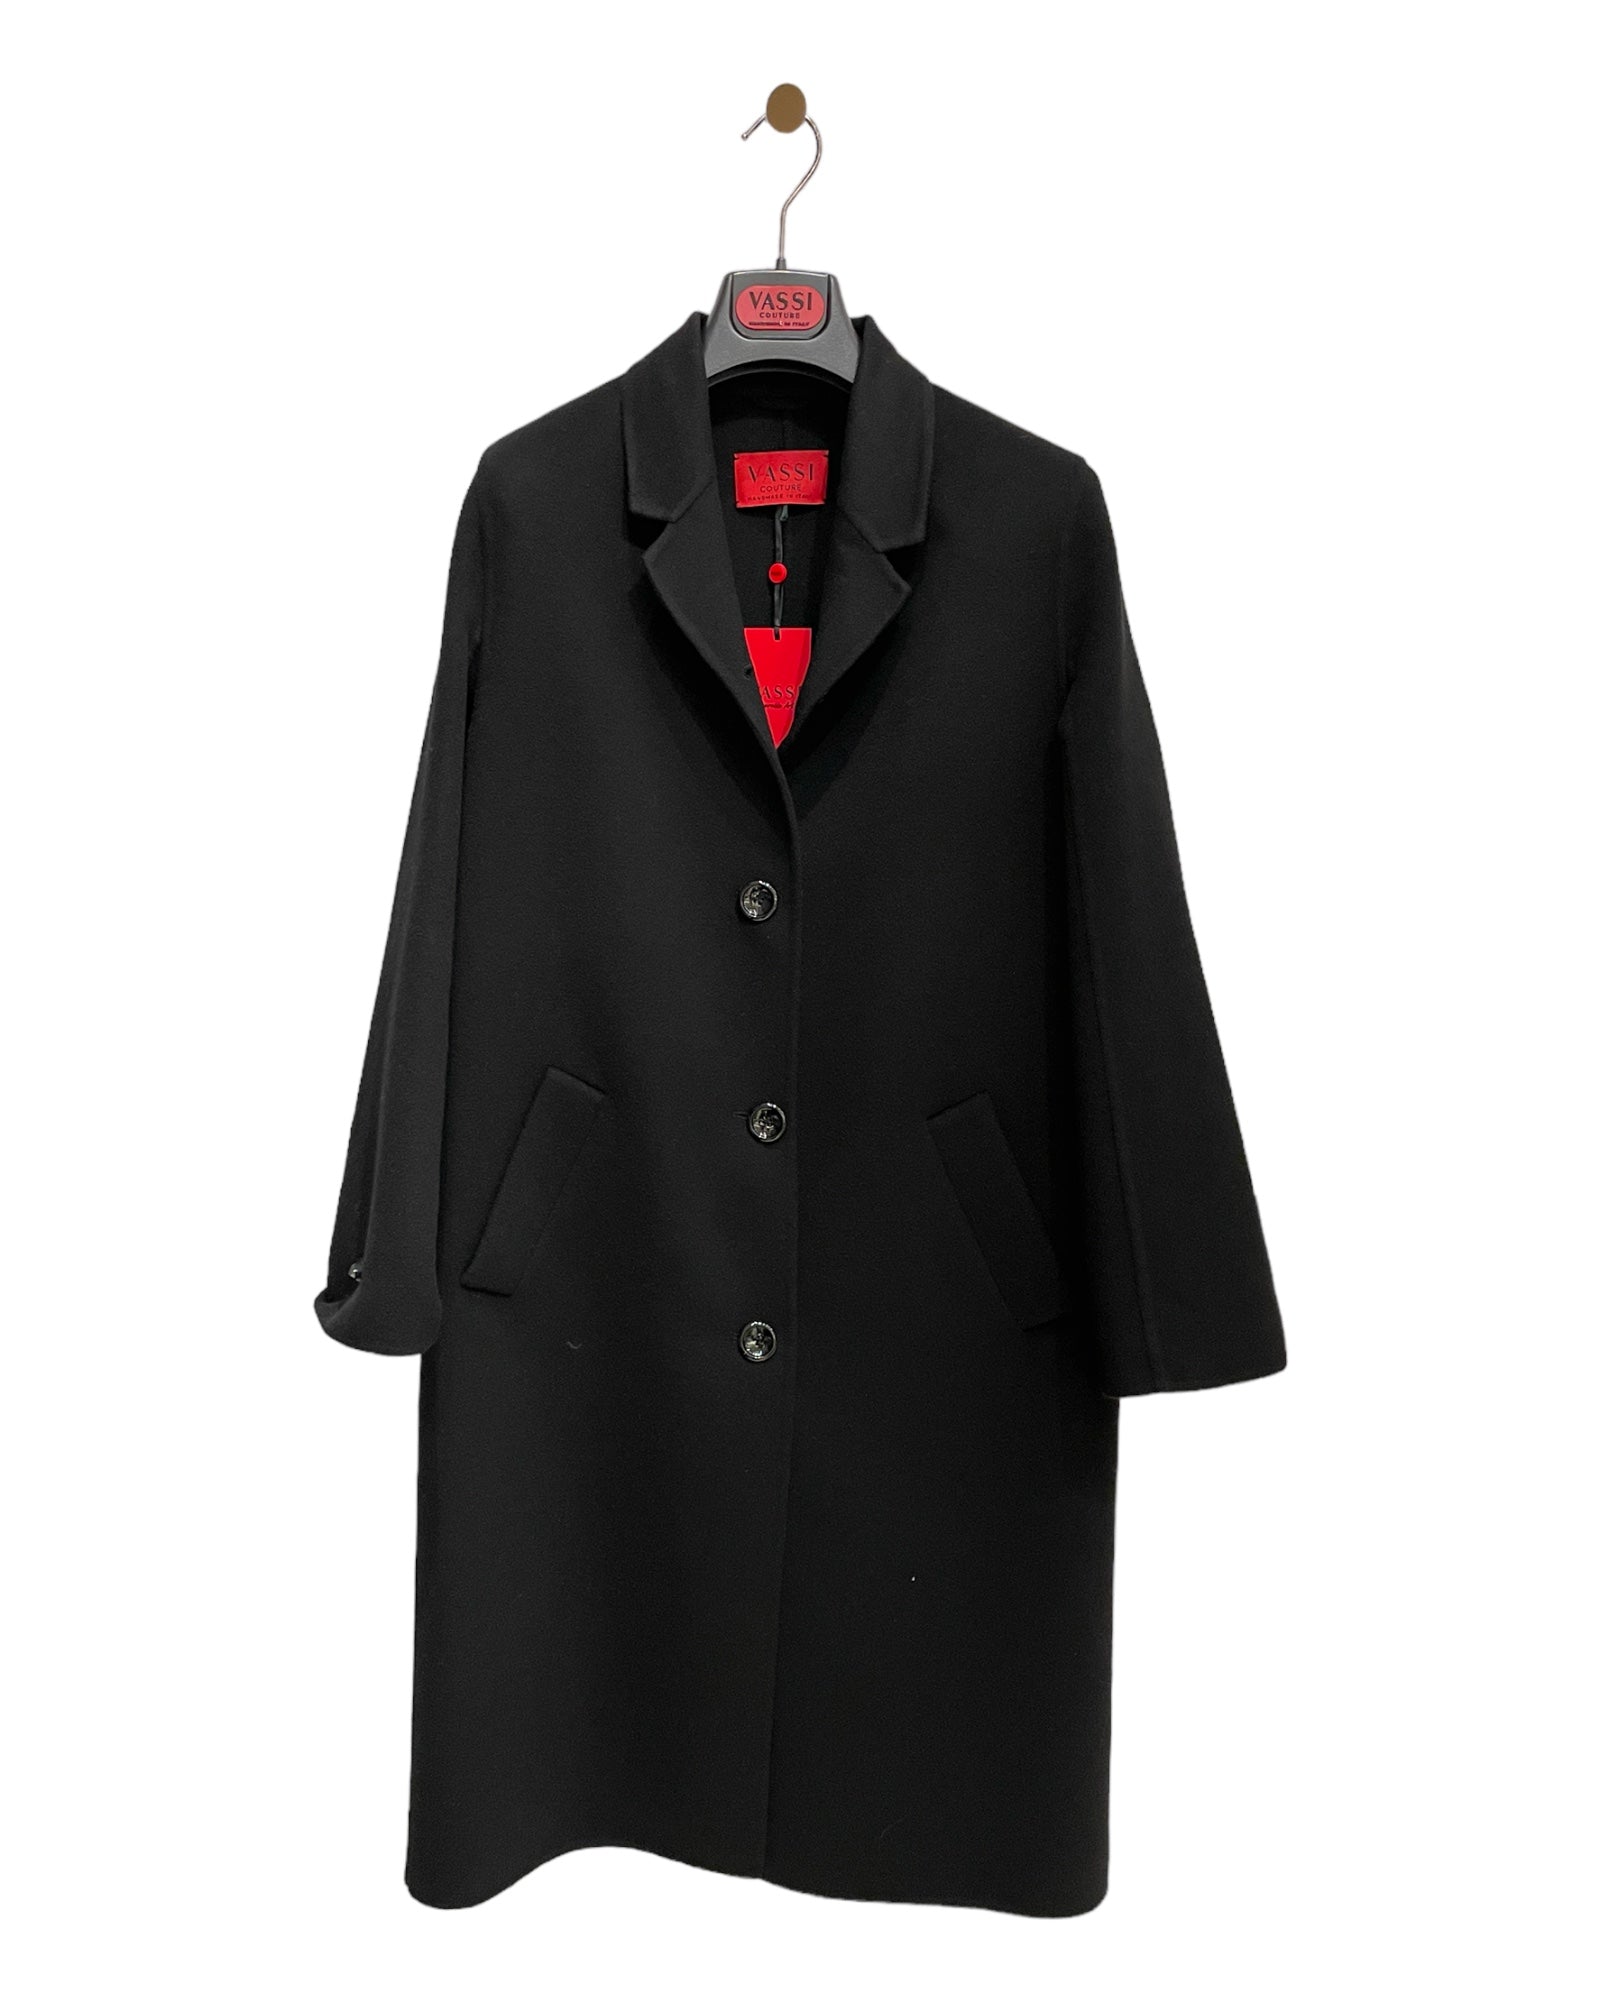 Classic Cashmere Women's Coat - Black - VASSI